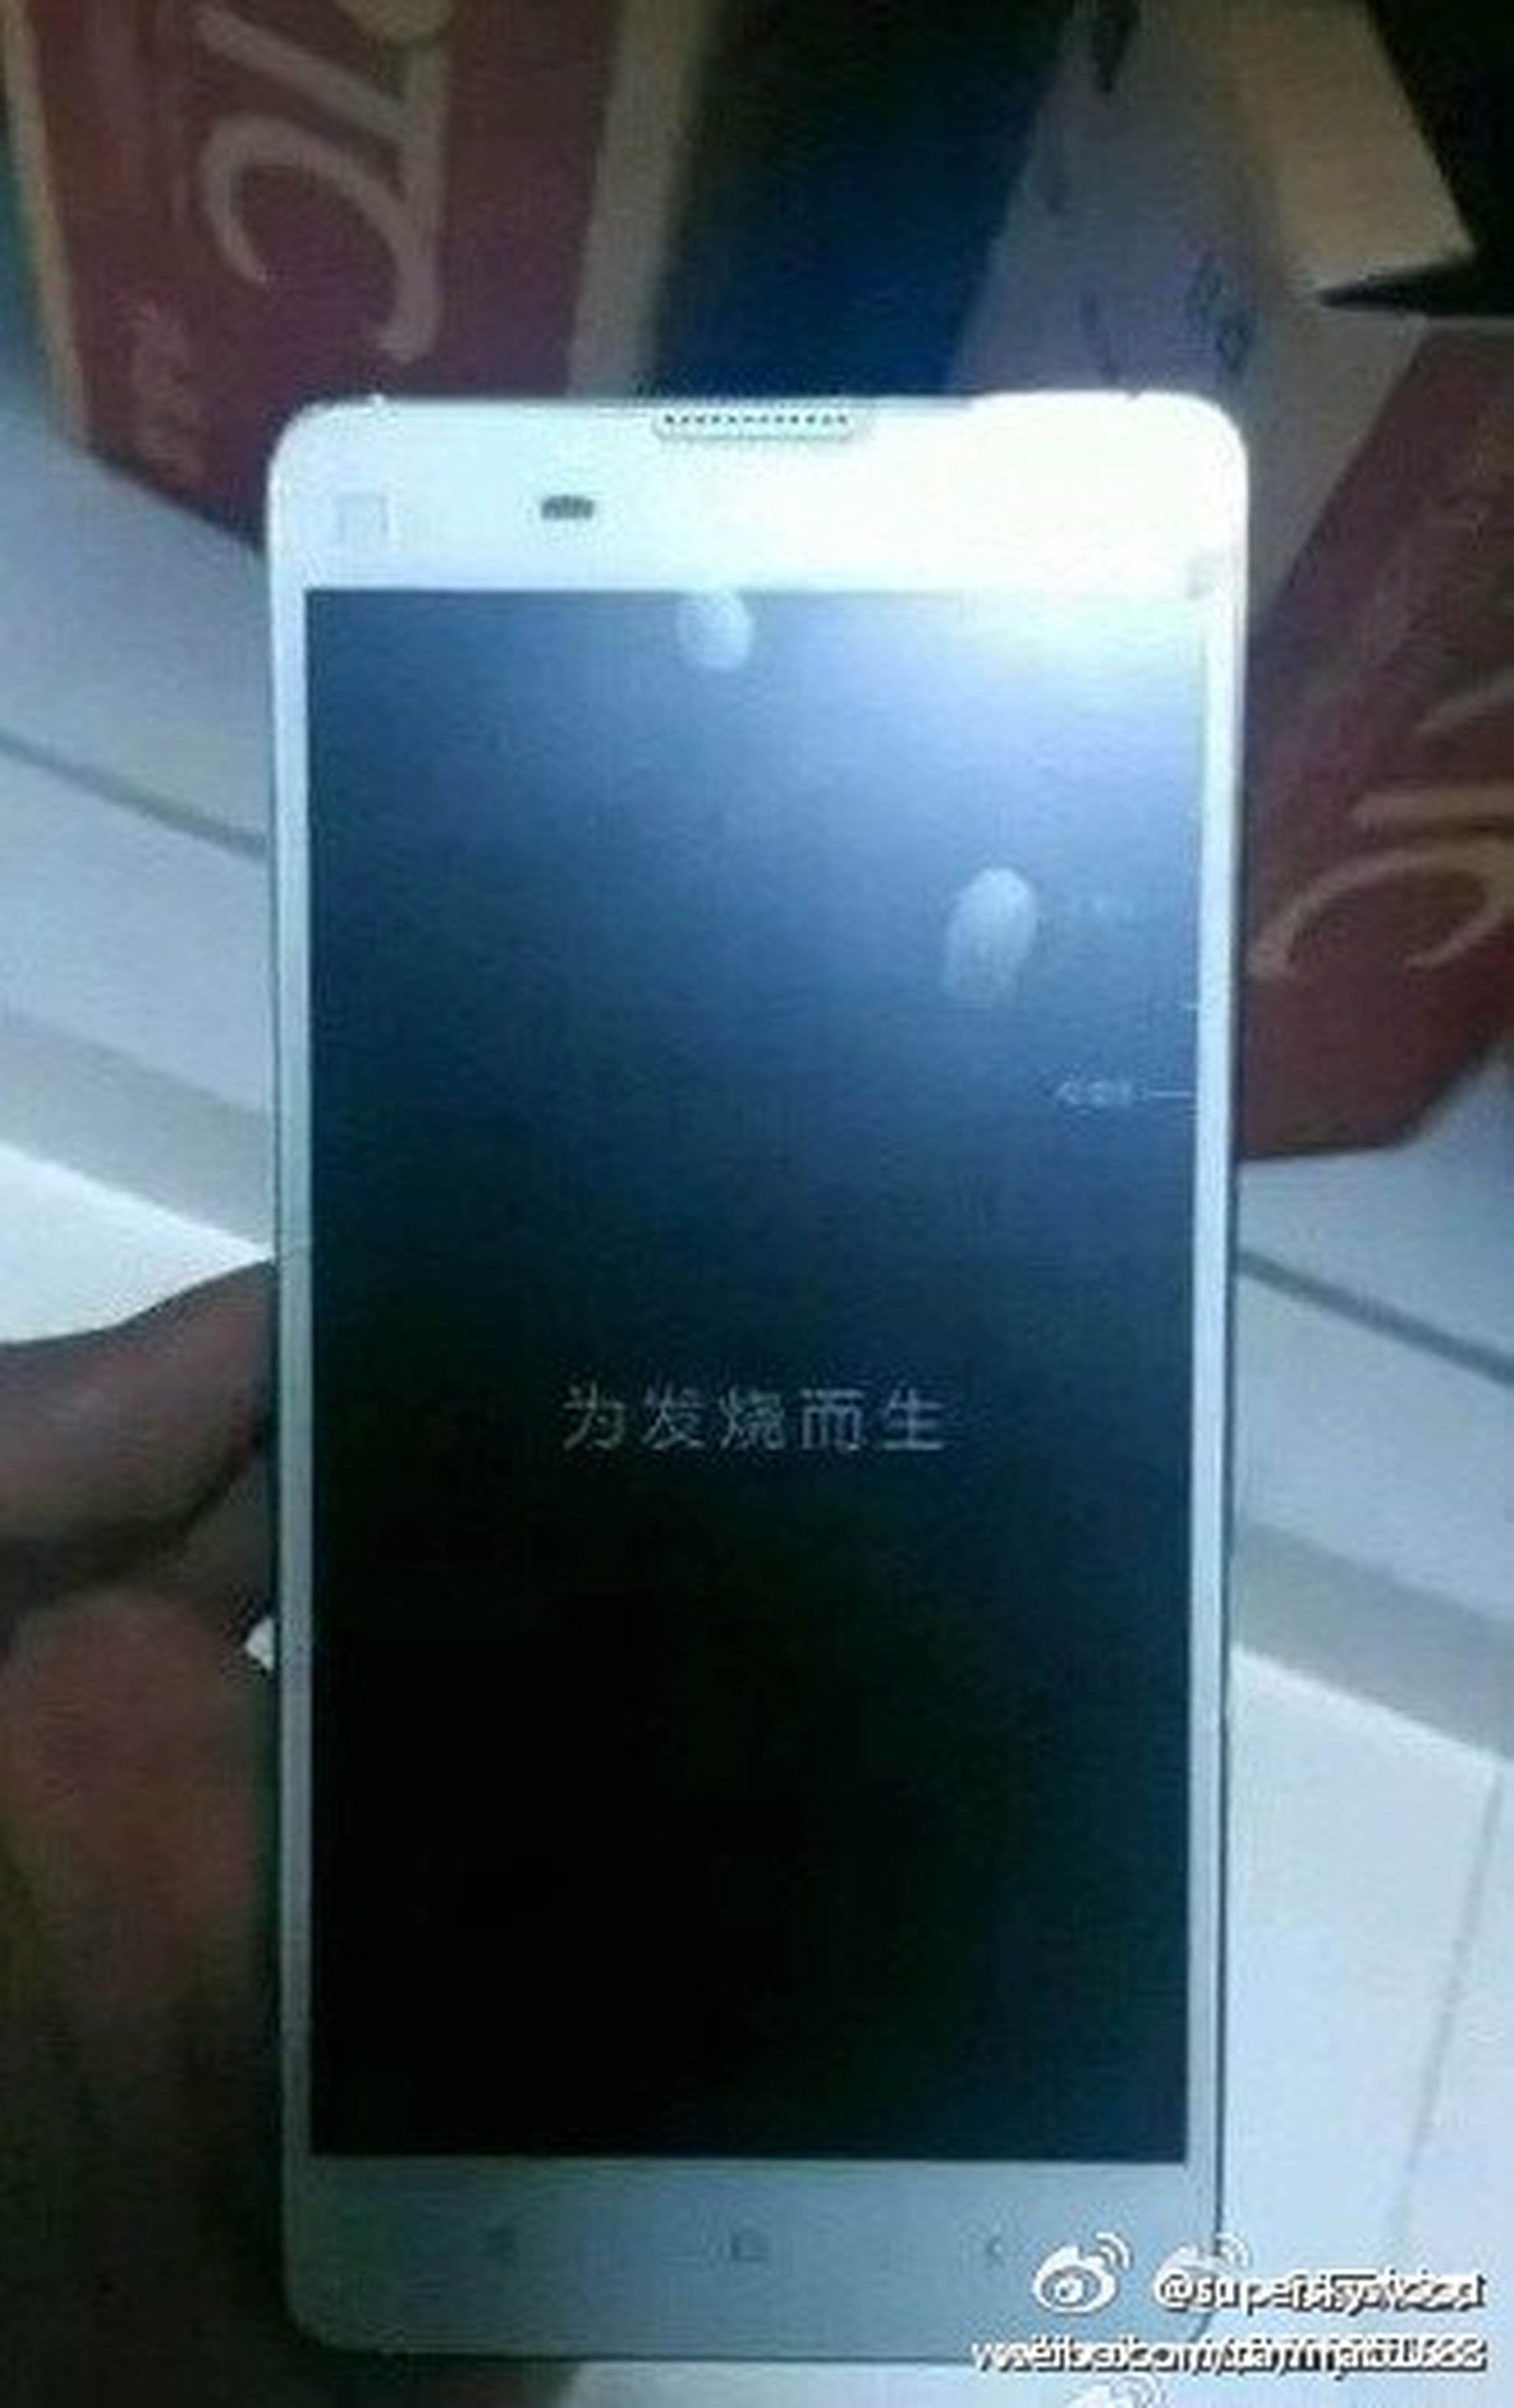 Filtración de Xiaomi Mi3S